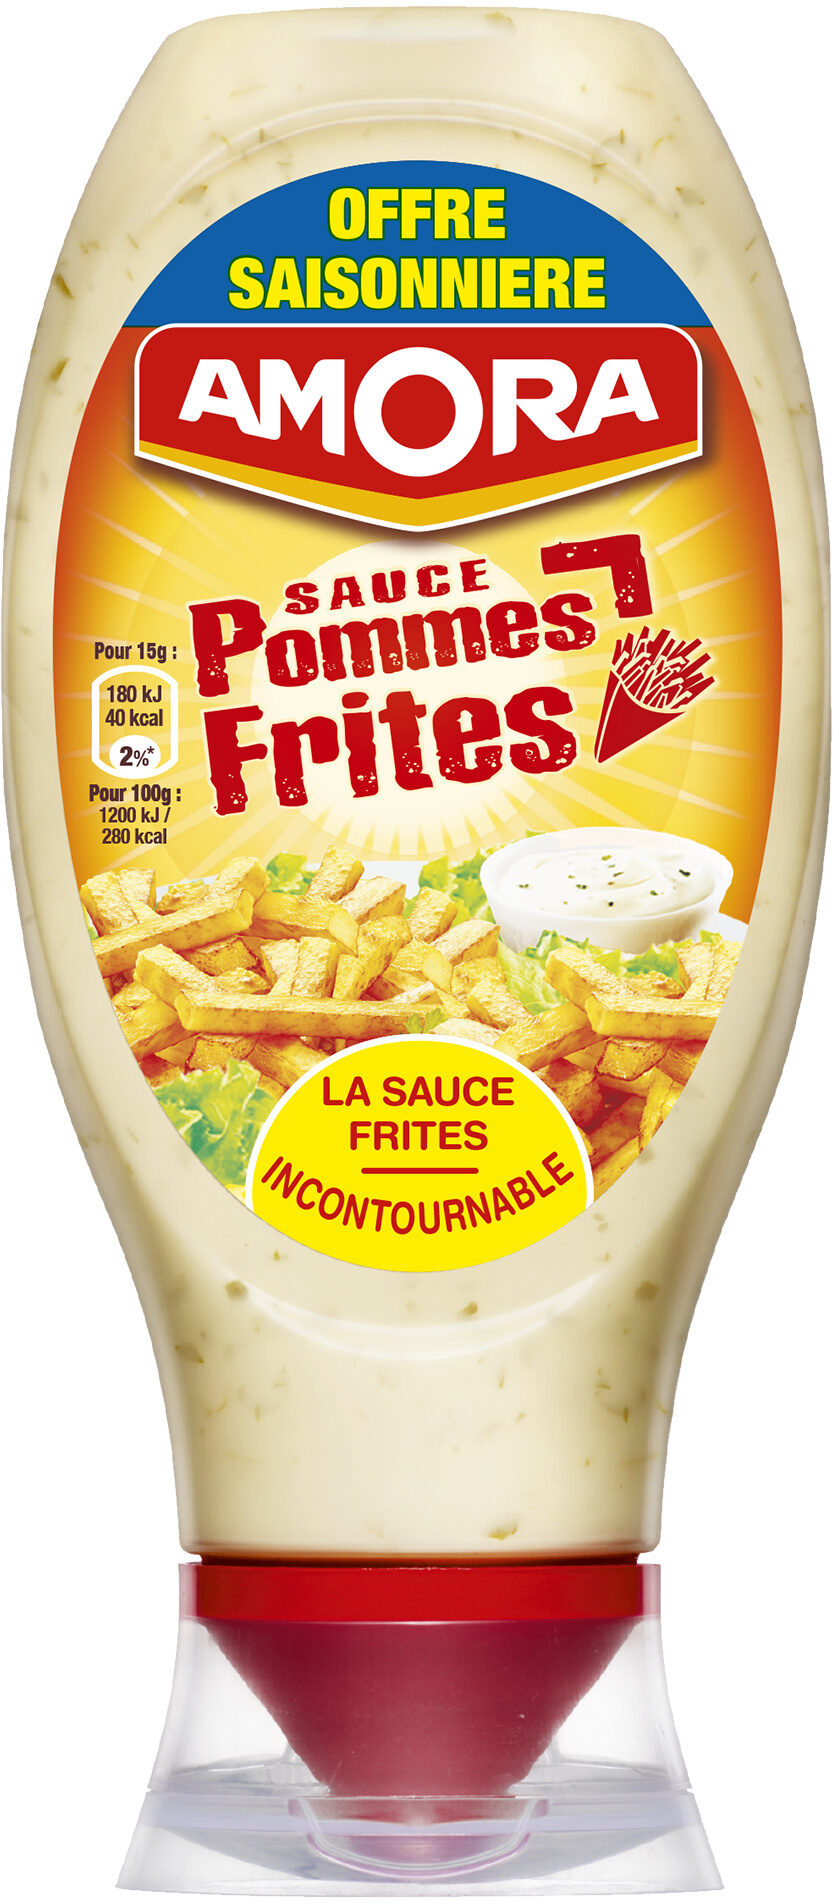 Amora Sauce Pommes Frites - Offre Saisonnière - 448g - Product - fr